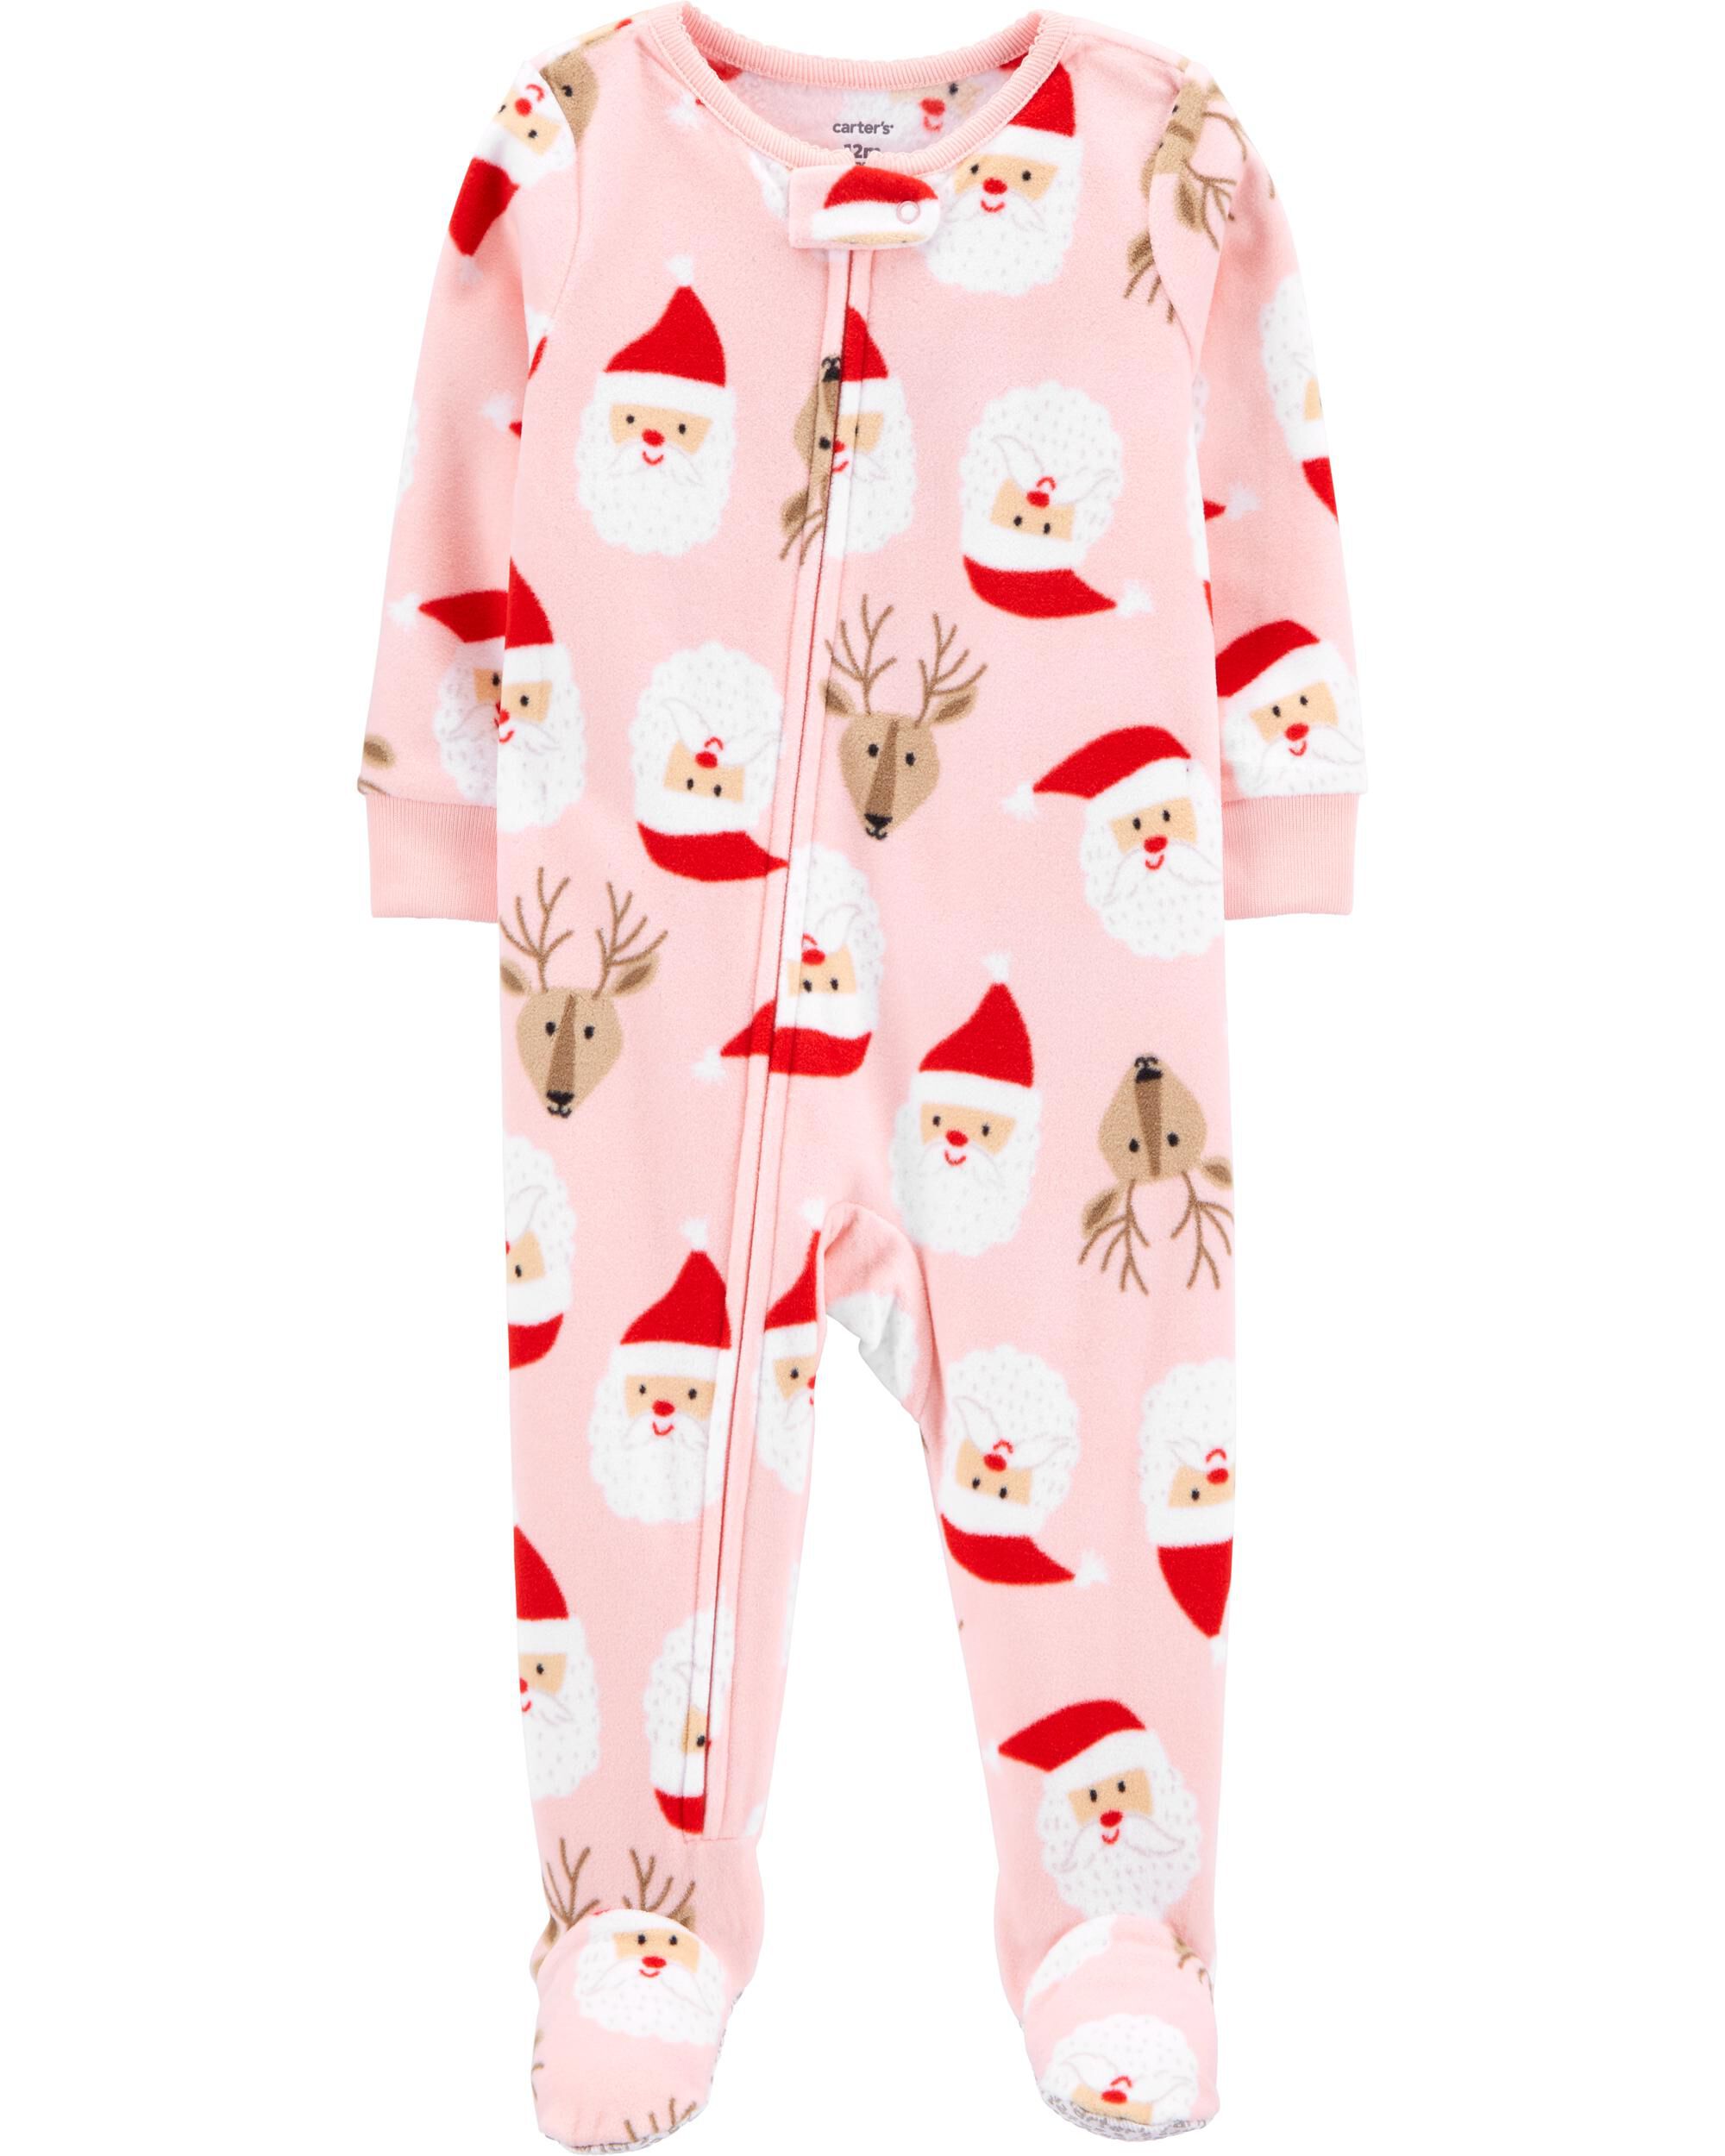 carters baby girl pajamas